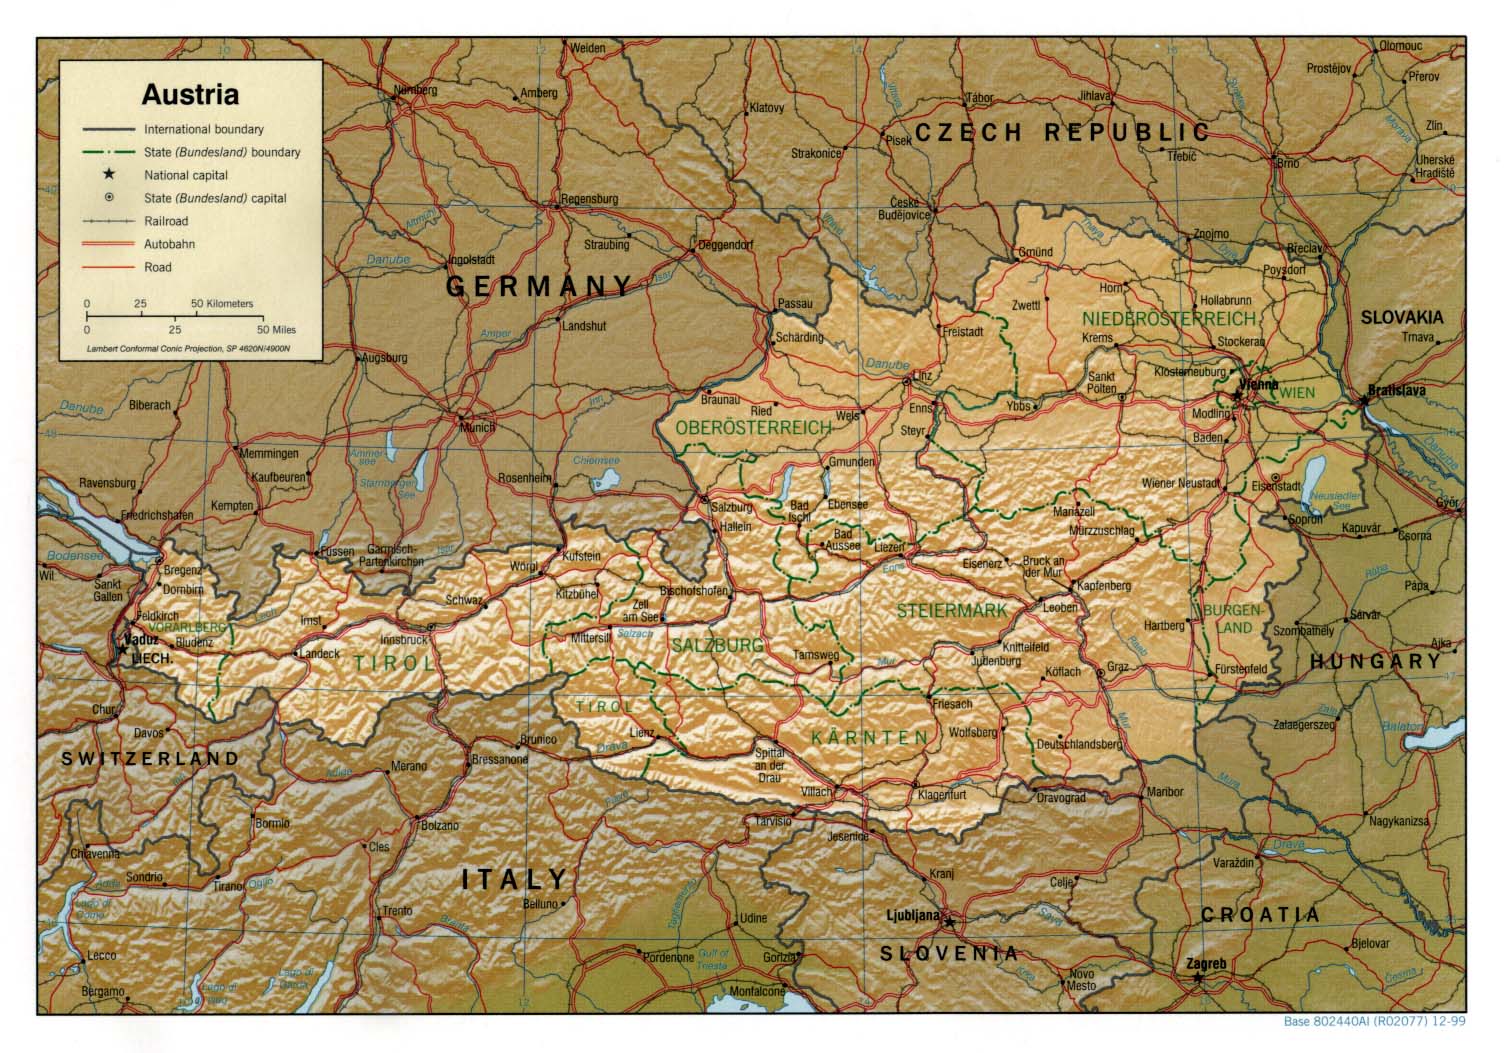 www ausztria térkép hu Ausztria térkép lap   Megbízható válaszok profiktól www ausztria térkép hu